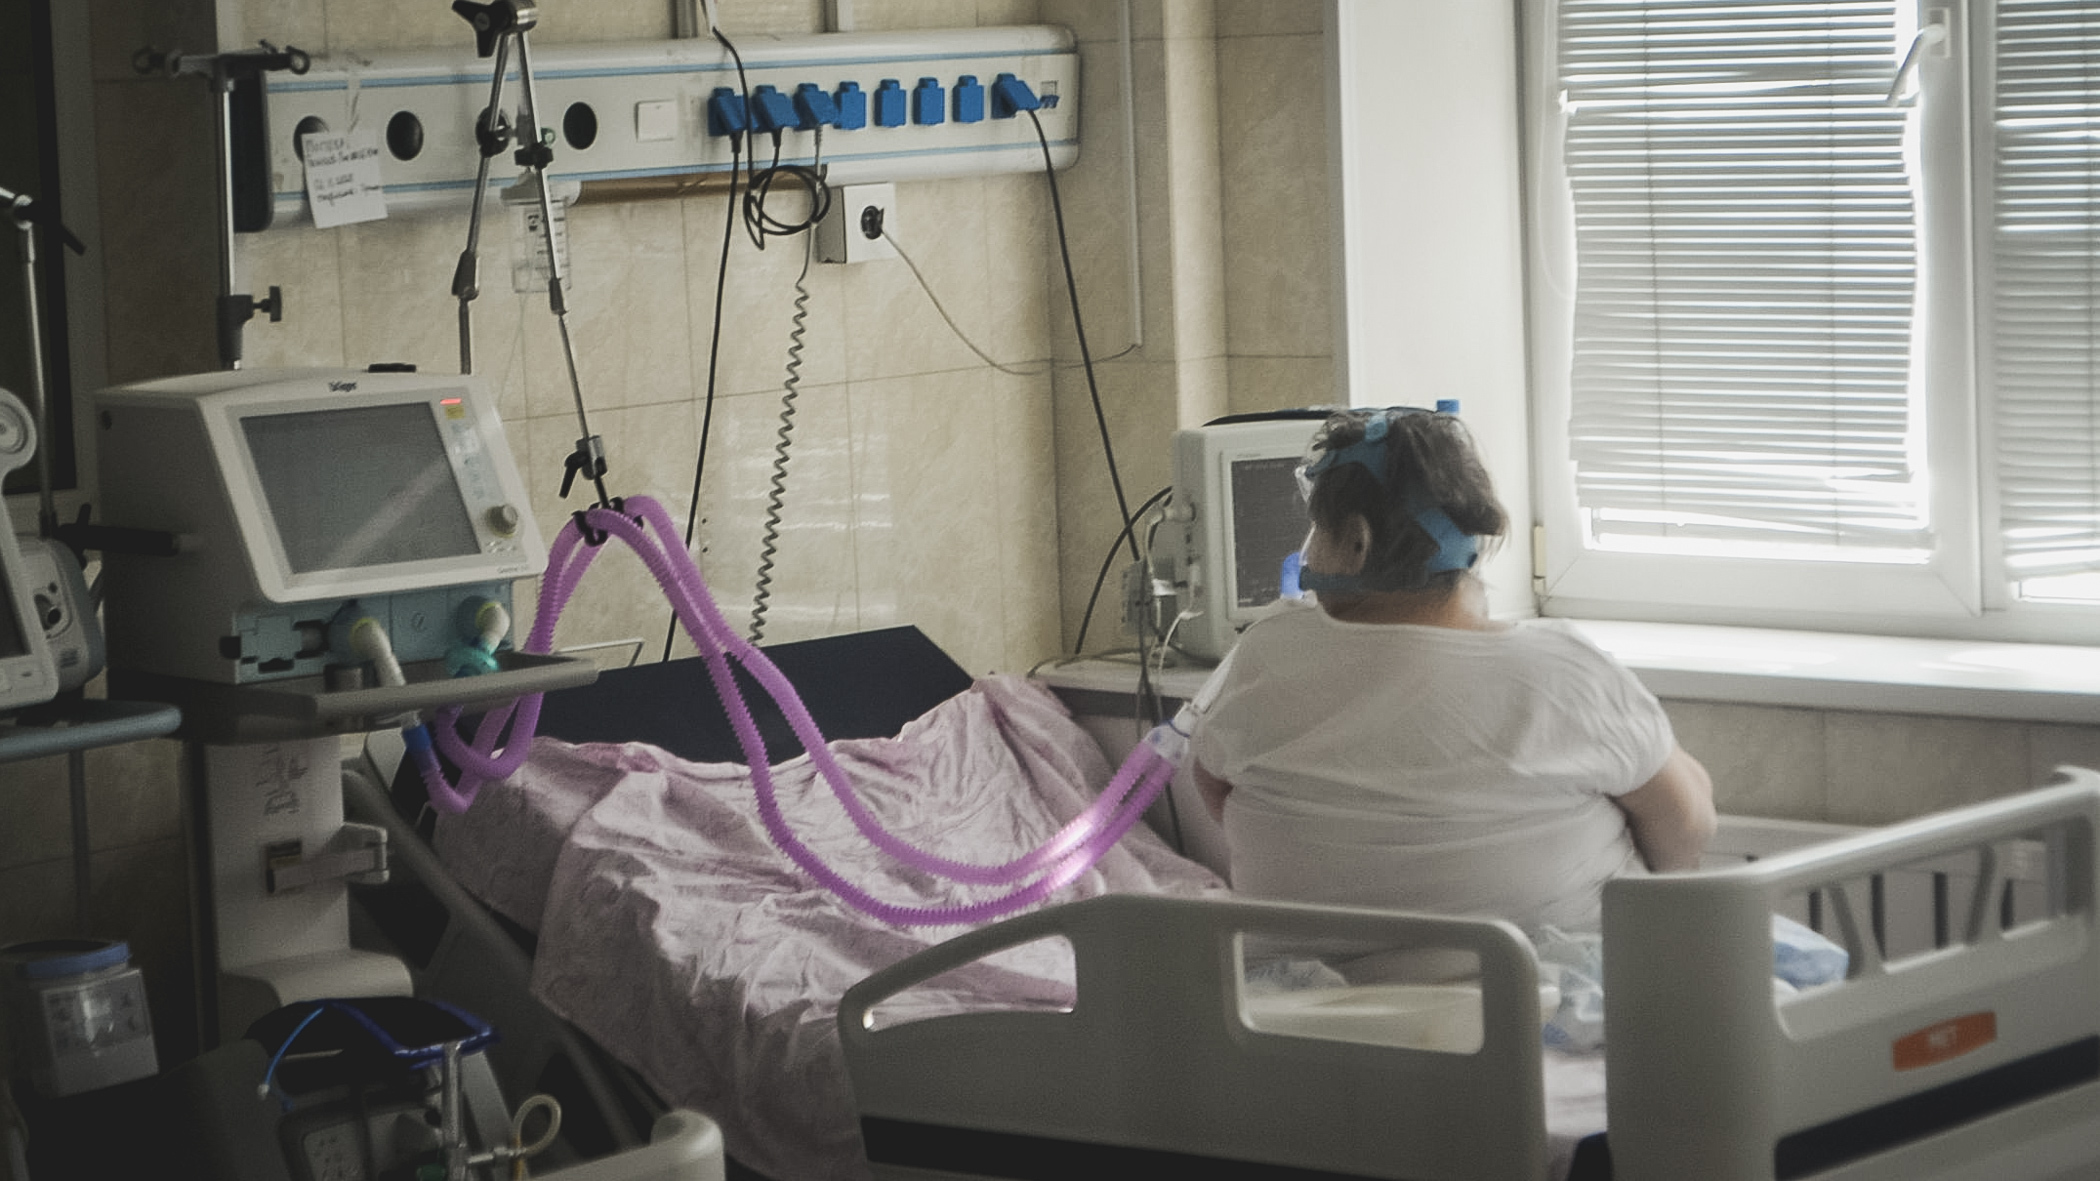 23 жителя Хабаровска заболели серозно-вирусным менингитом